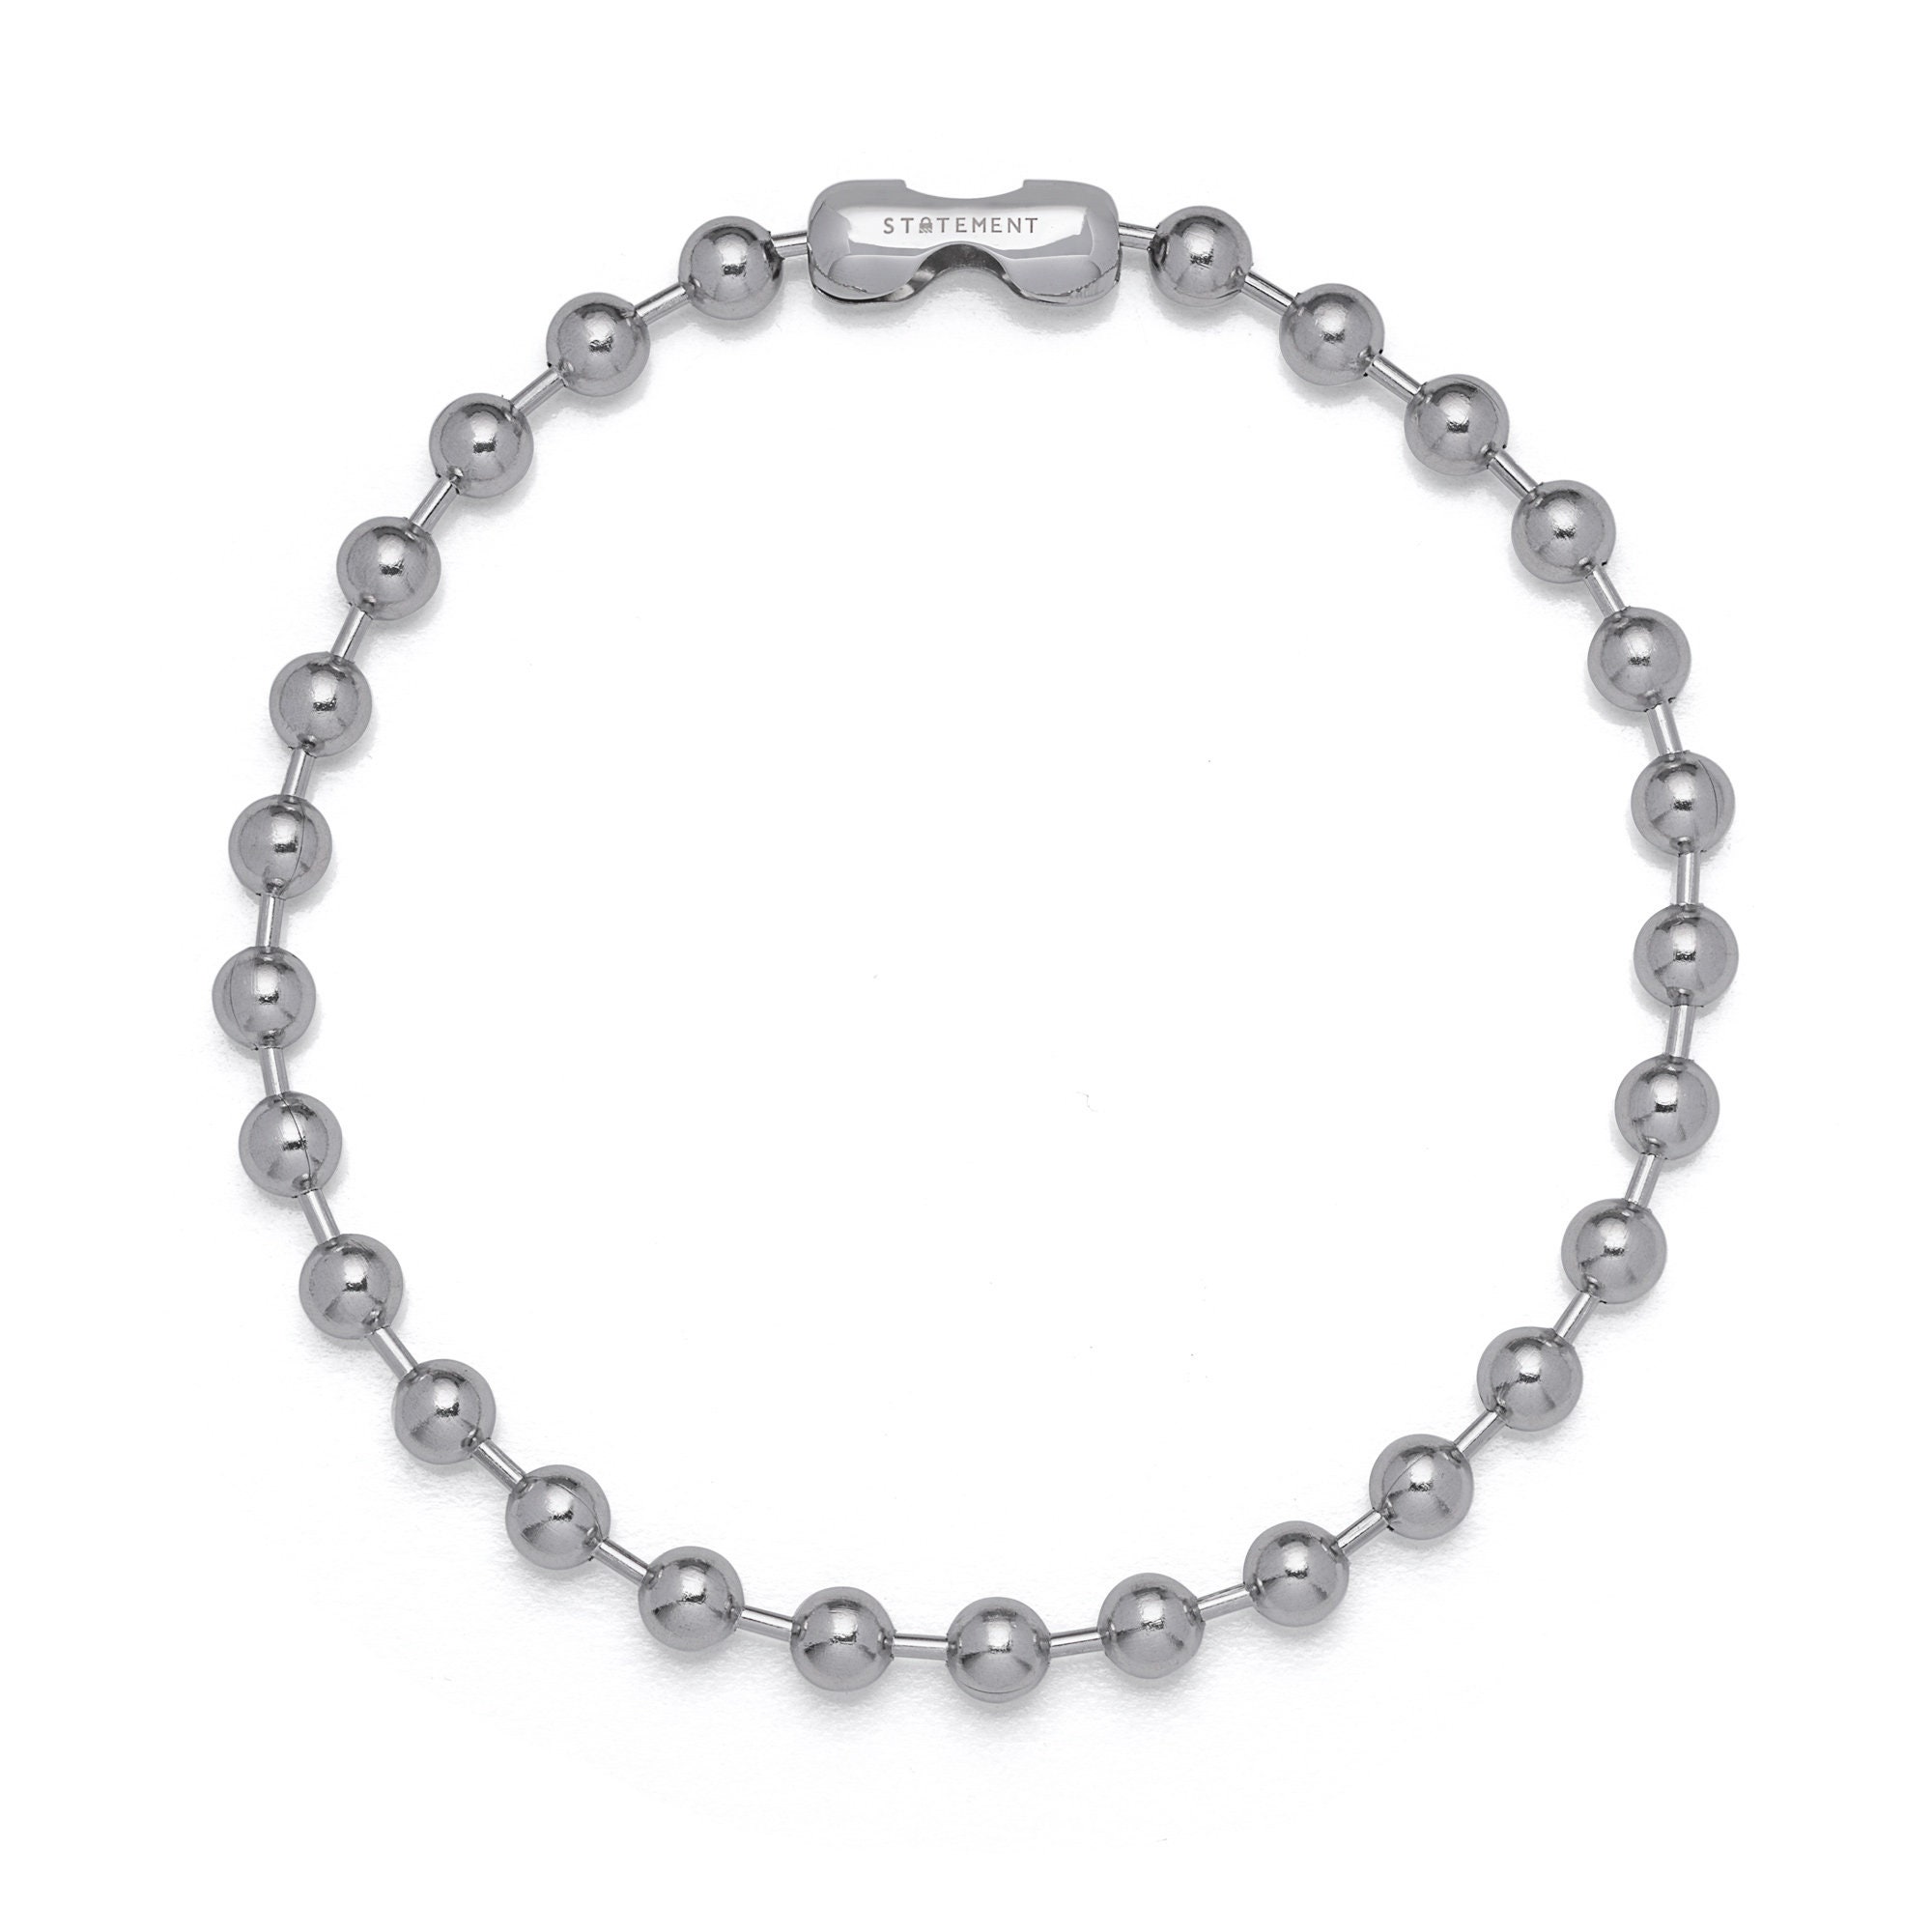 Ambush ball-chain Necklace - Silver